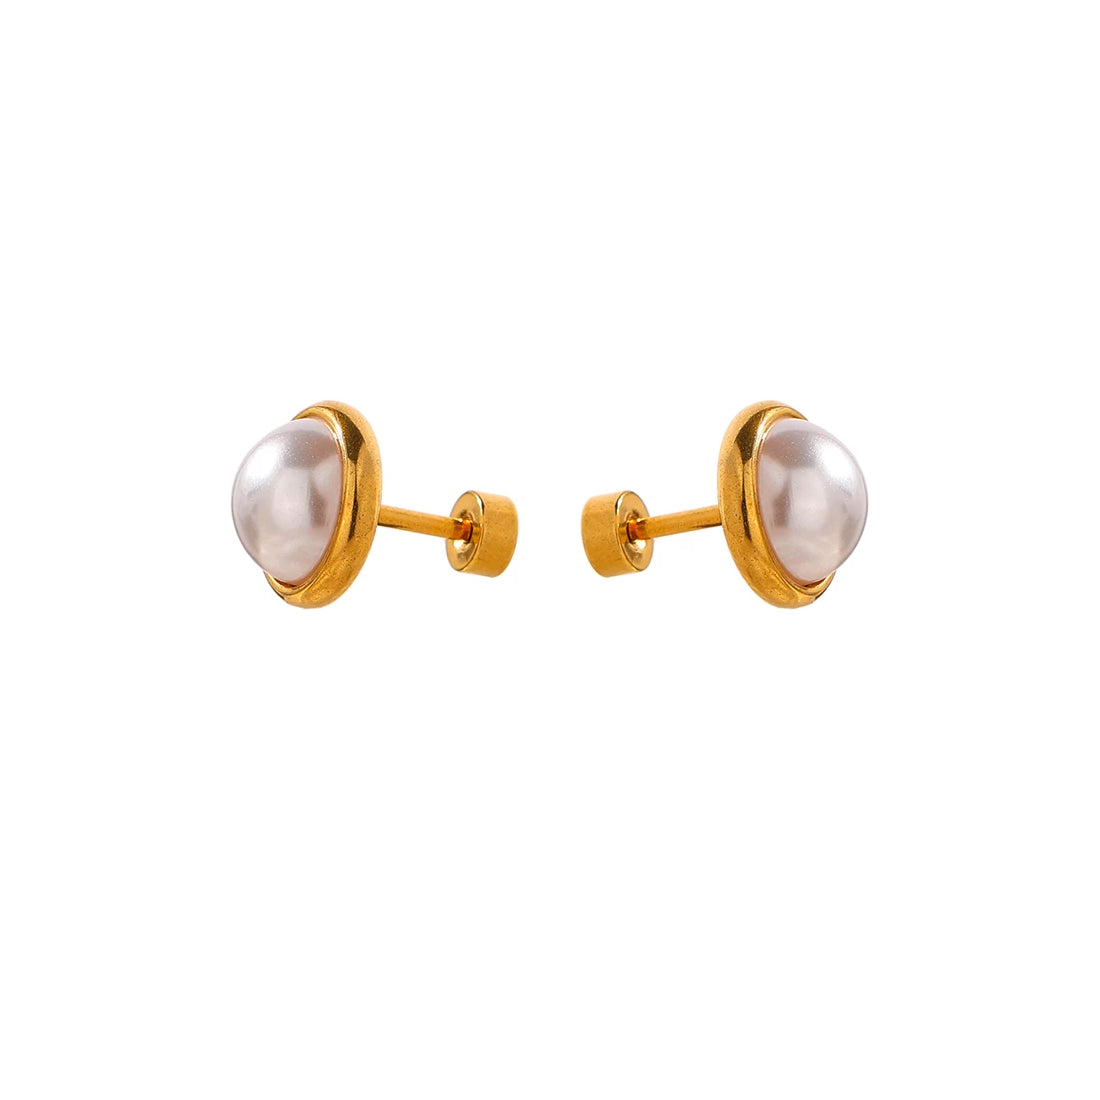 Su Perlen Ohrringe Yasemen Store Schmuck Accessoires Edelstahl Stainless Steel 18K Vergoldet Gold jewel jewelry earrings